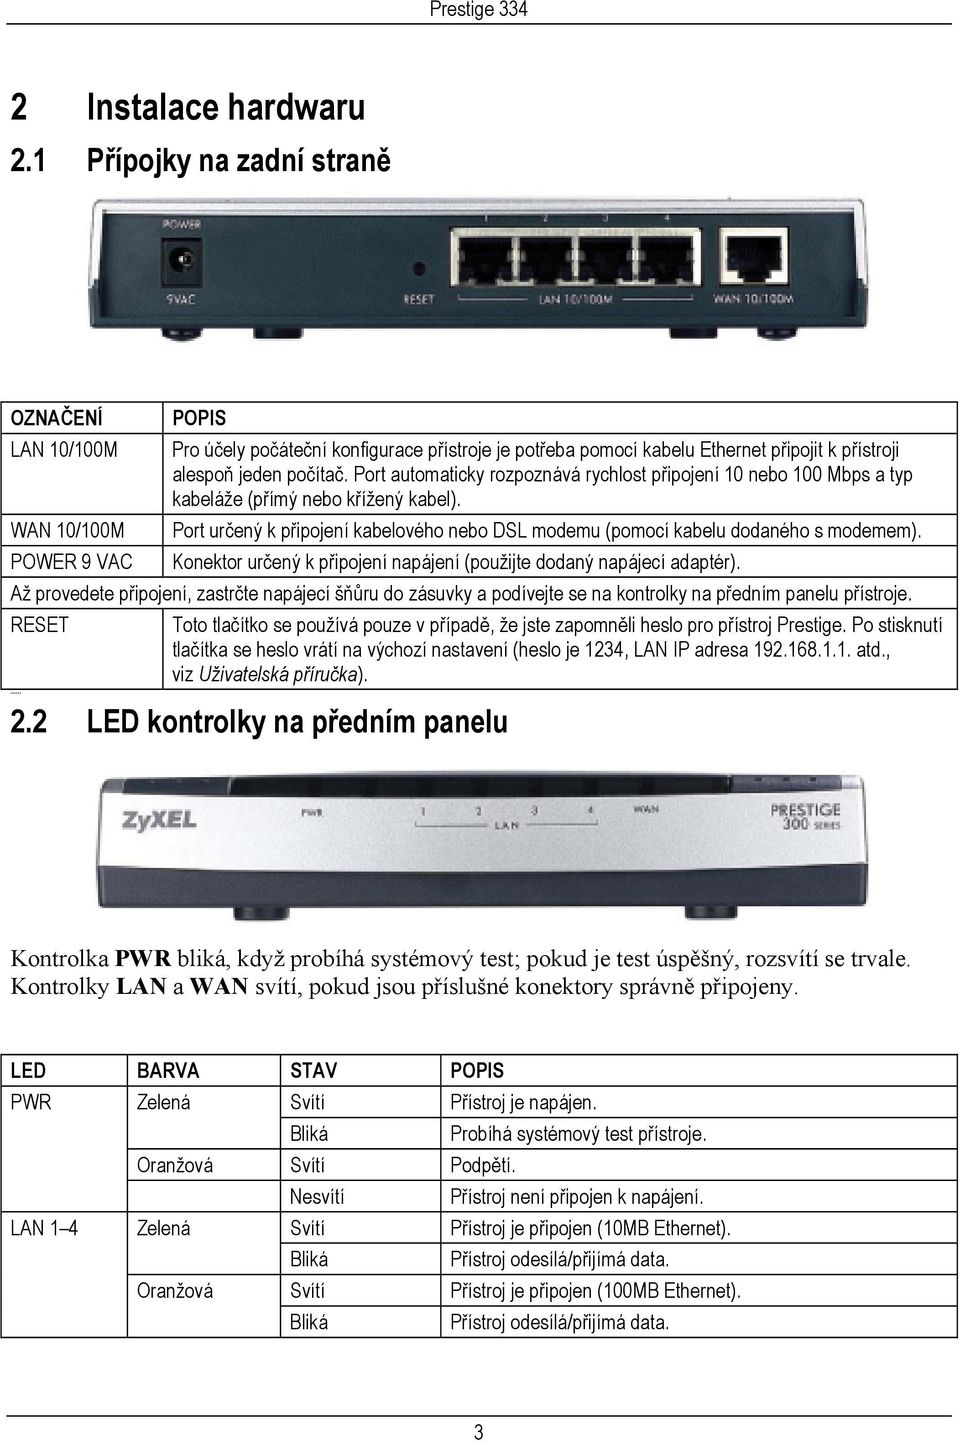 Port automaticky rozpoznává rychlost připojení 10 nebo 100 Mbps a typ kabeláže (přímý nebo křížený kabel). Port určený k připojení kabelového nebo DSL modemu (pomocí kabelu dodaného s modemem).